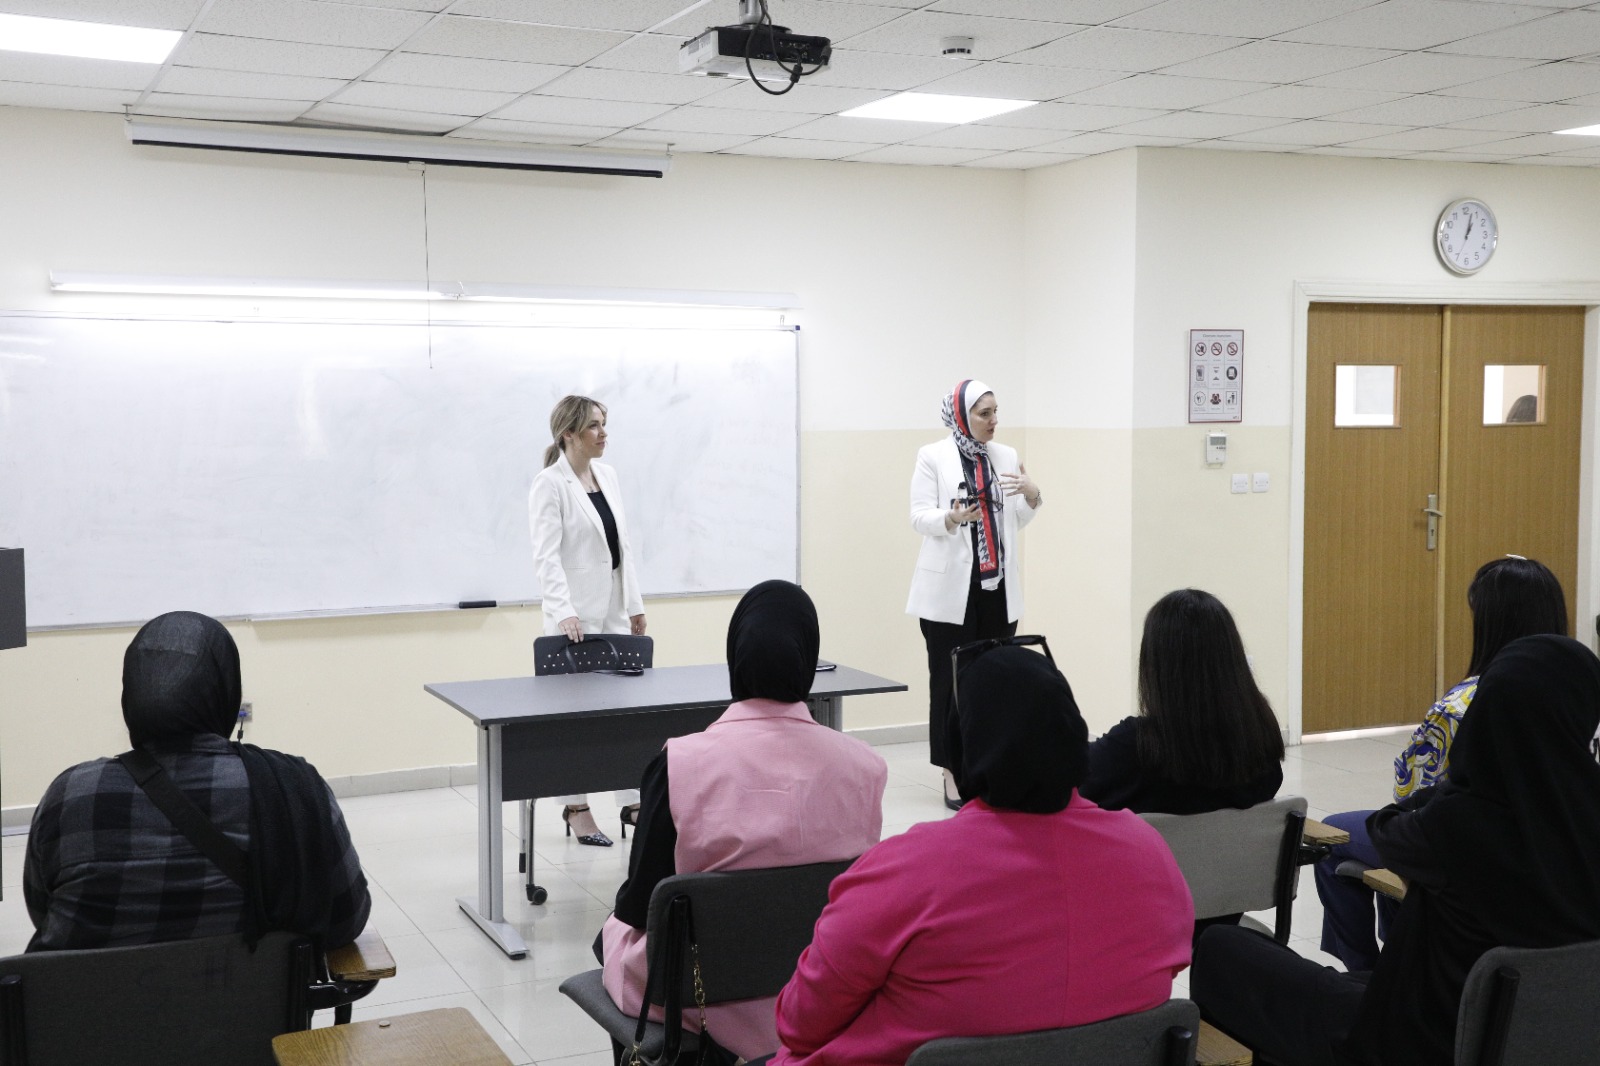 طلبة “حقوق الشرق الأوسط” يتفاعلون مع خبيرة حول قانون العمل والضمان الاجتماعي